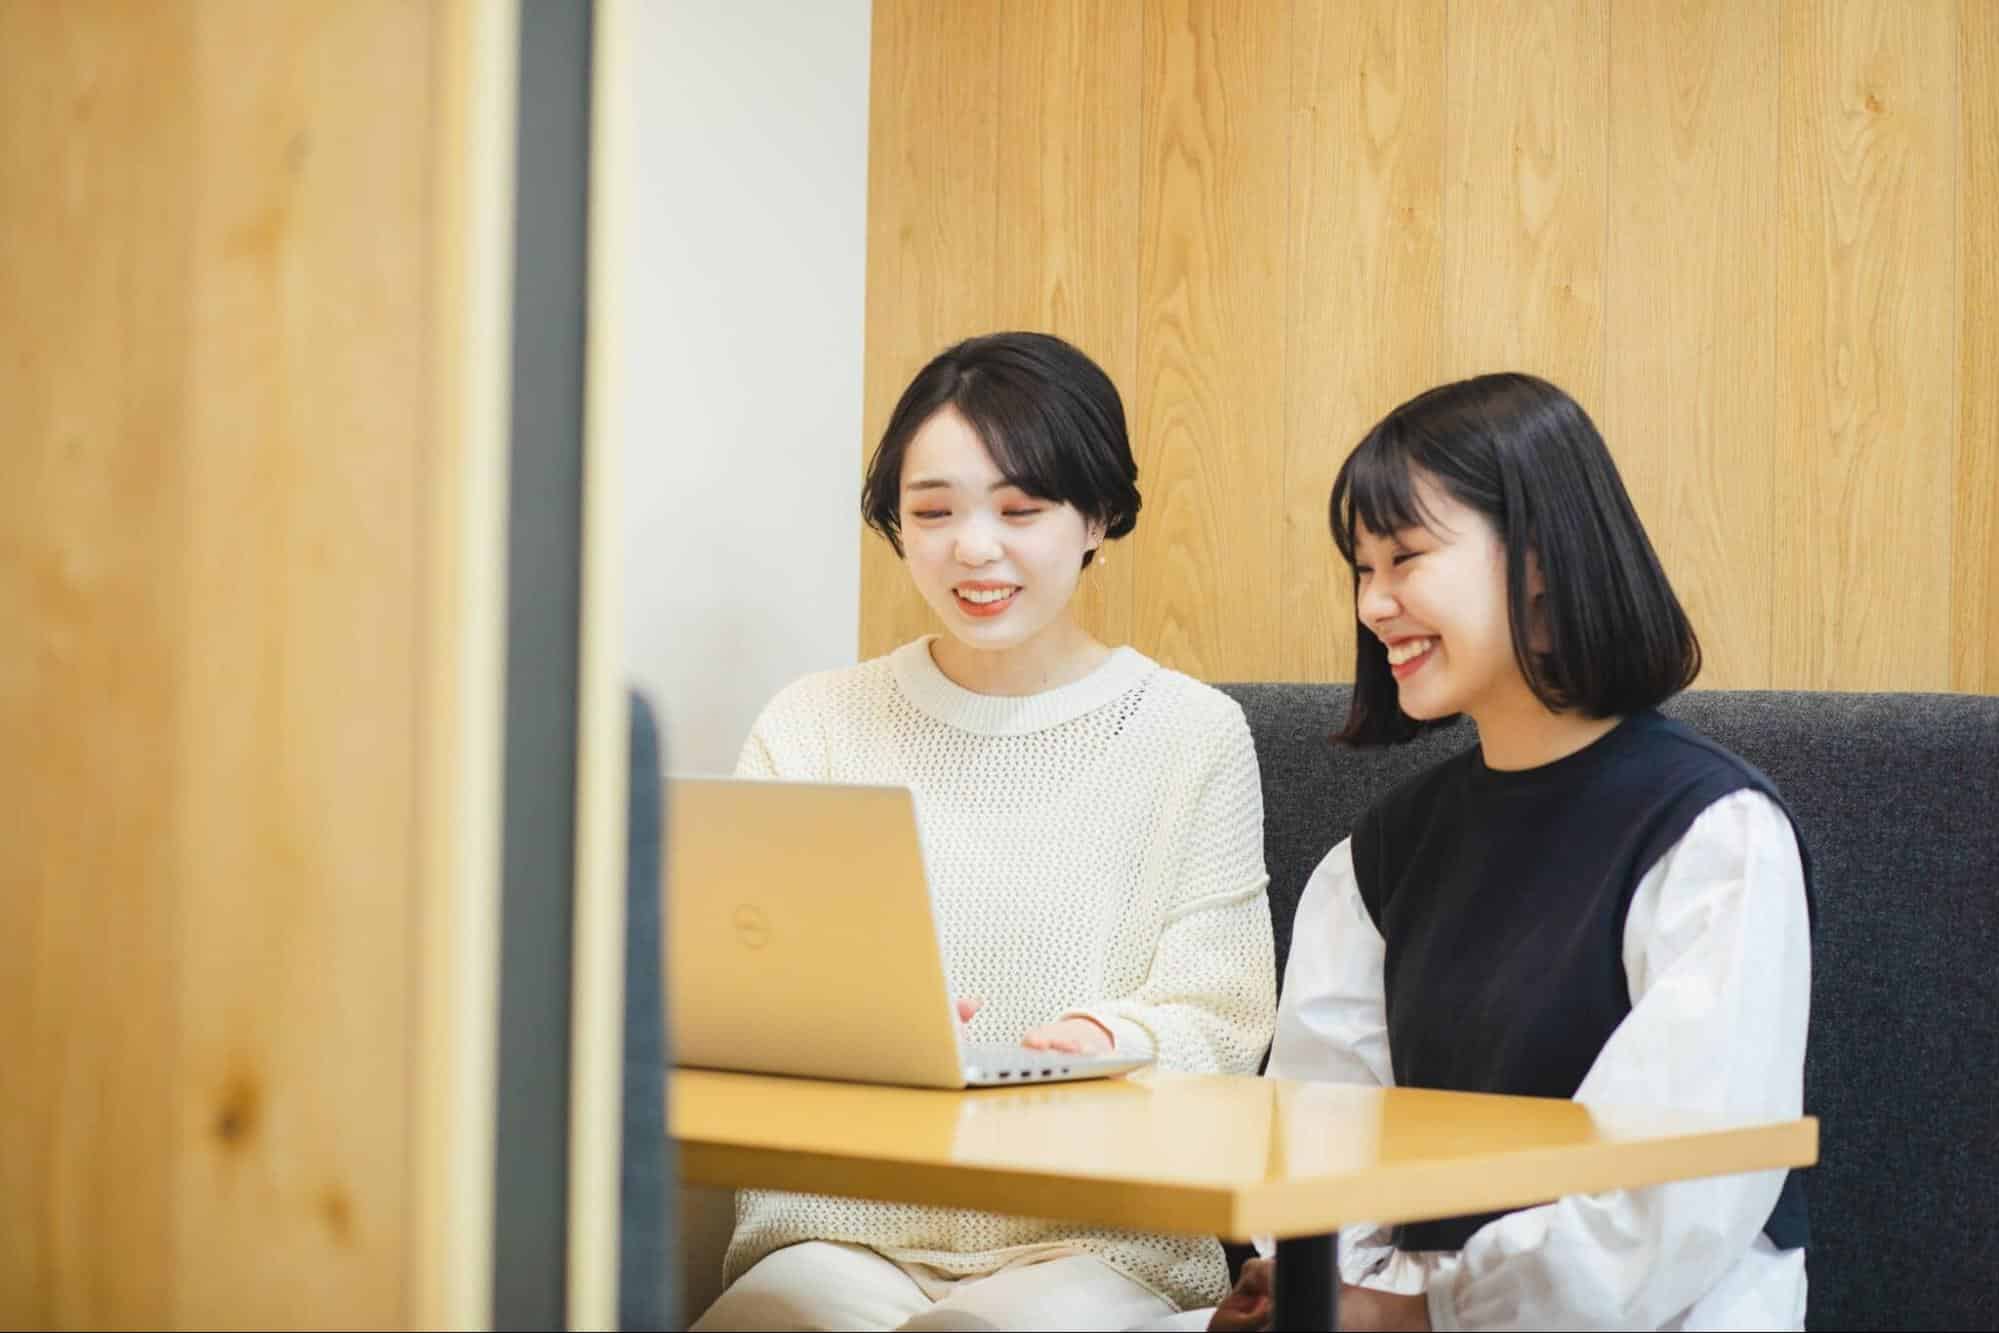 パソコンを見ながら笑っている女性二人